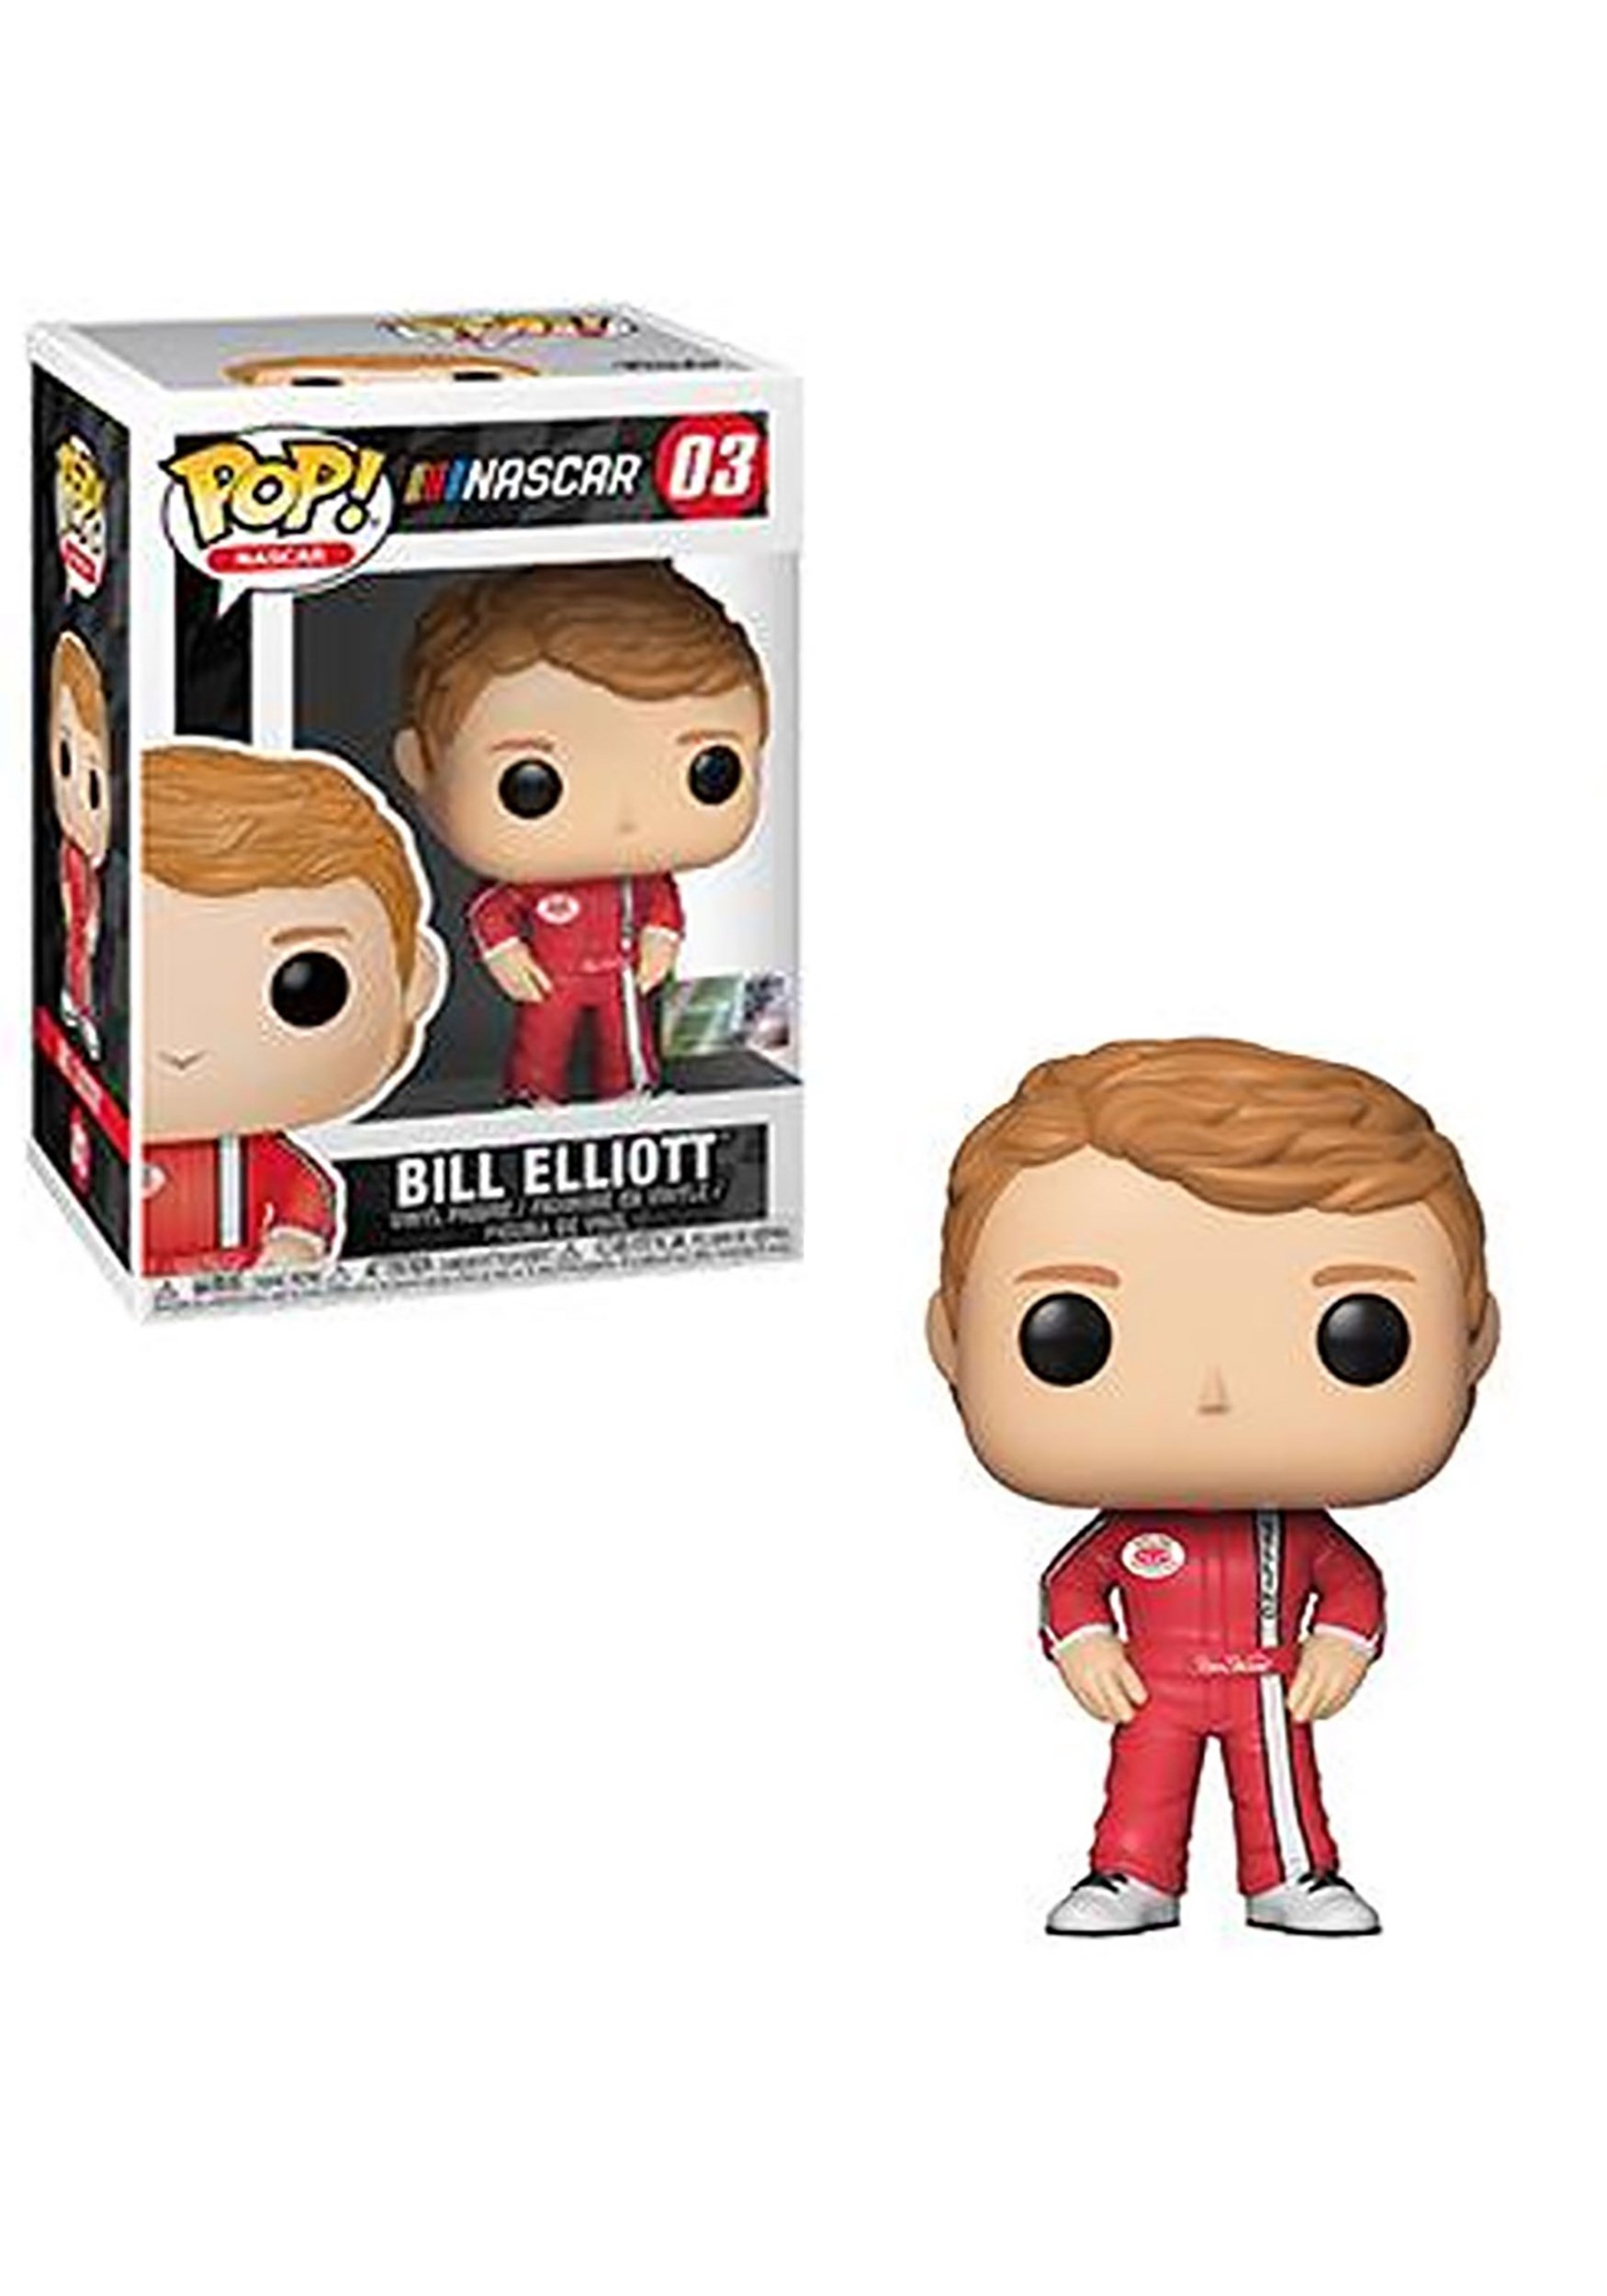 Bill Elliott - Pop! NASCAR